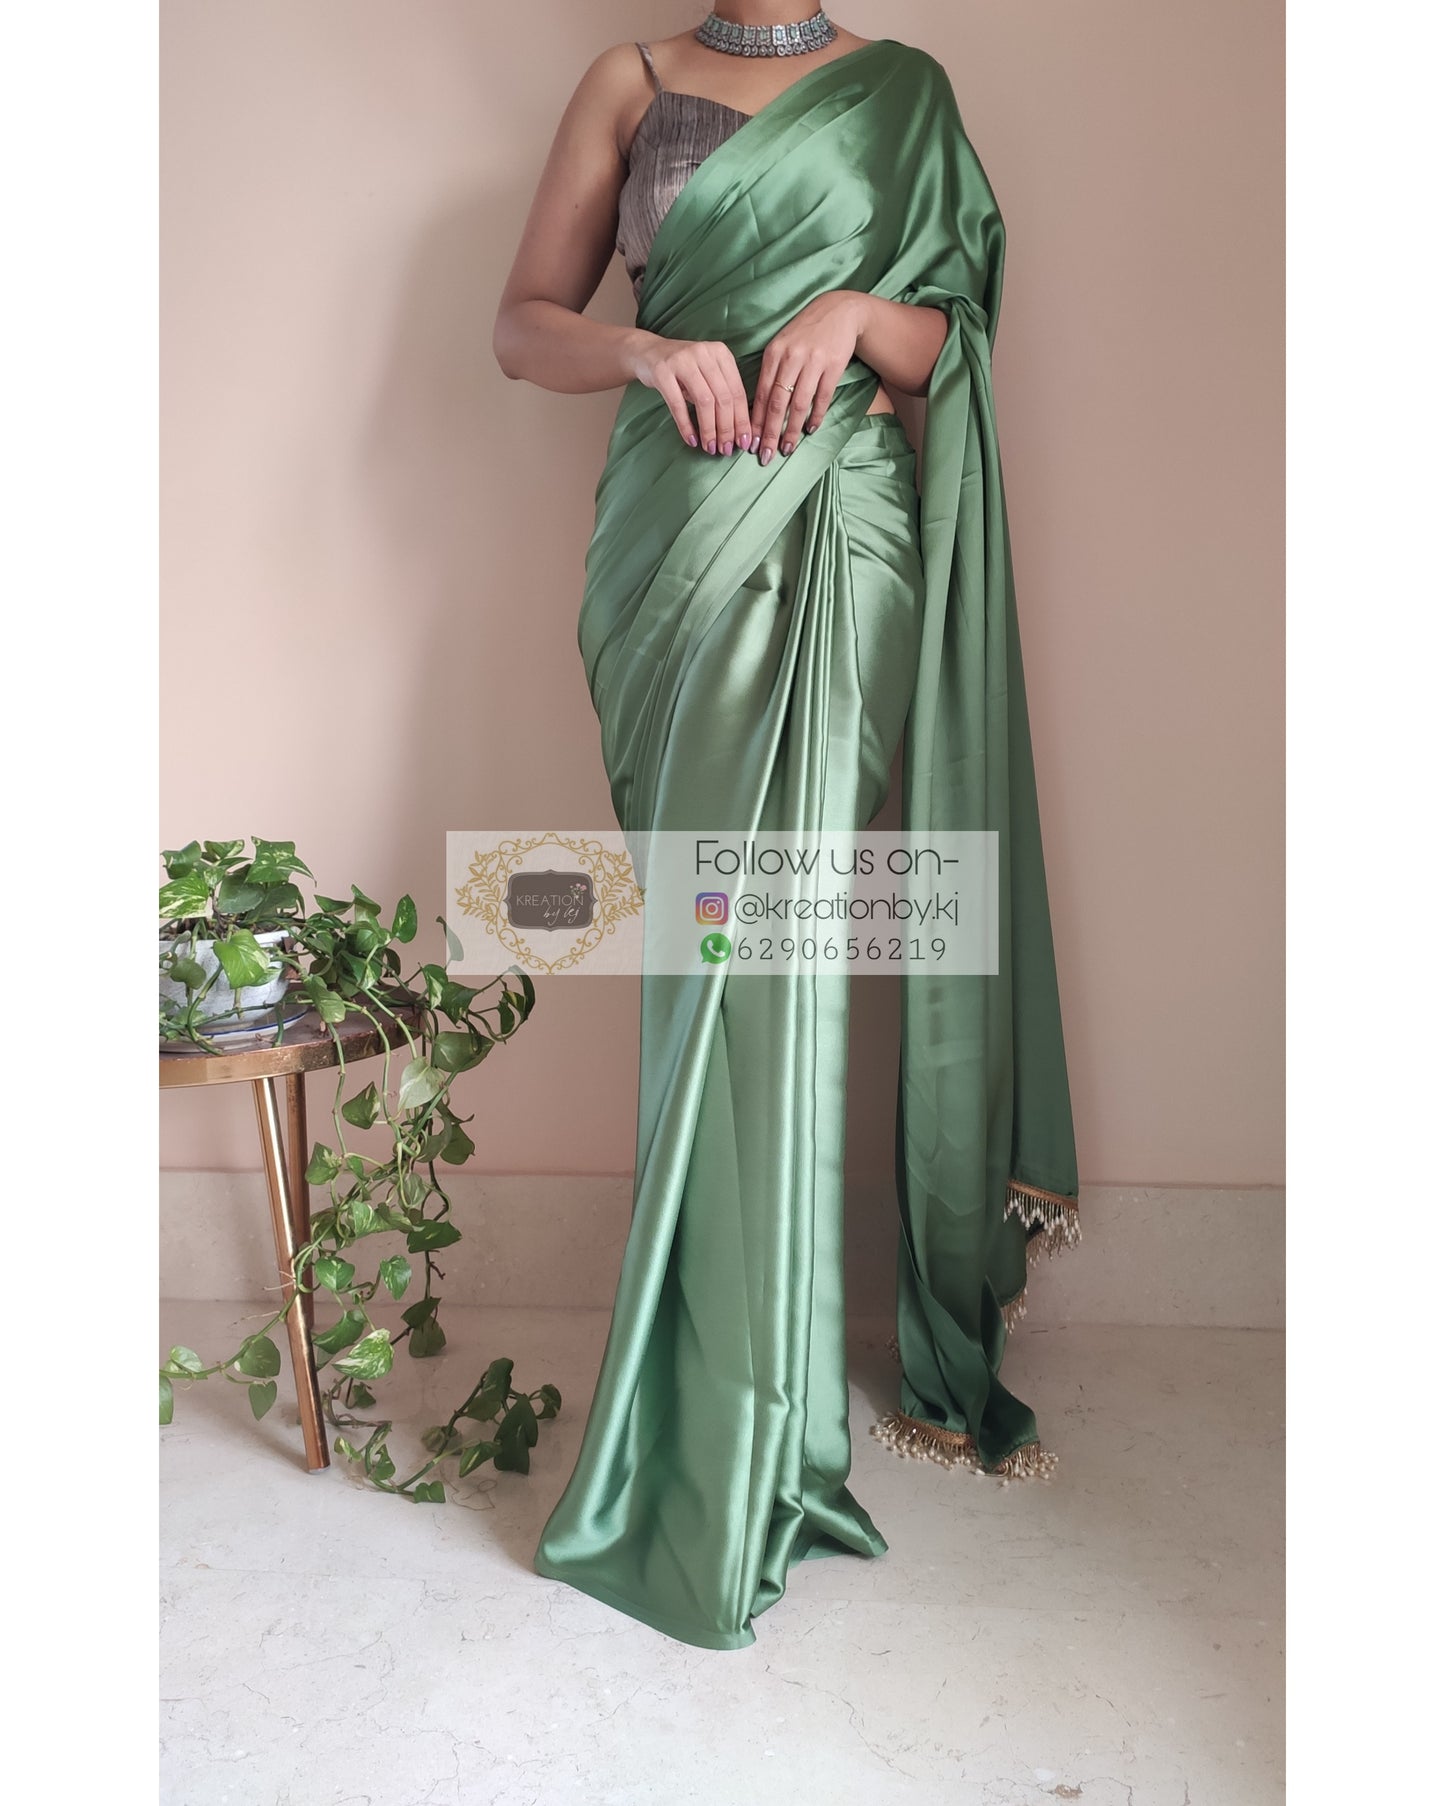 Moss Green Satin Silk Saree With Handmade Tassels On Pallu - kreationbykj